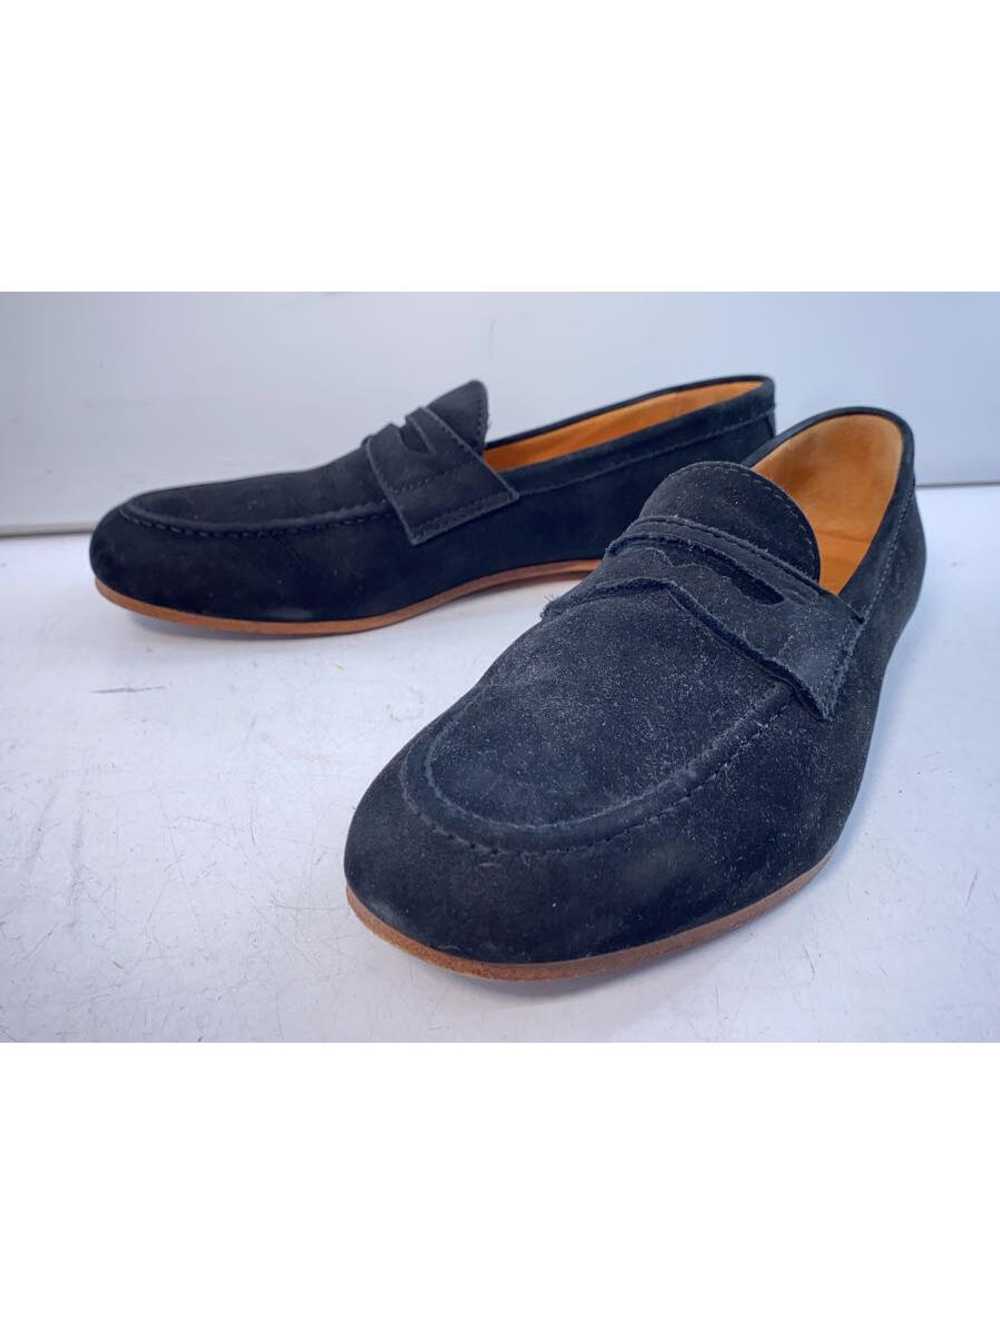 Regal Loafers/40/Blk Shoes BUK70 - image 2